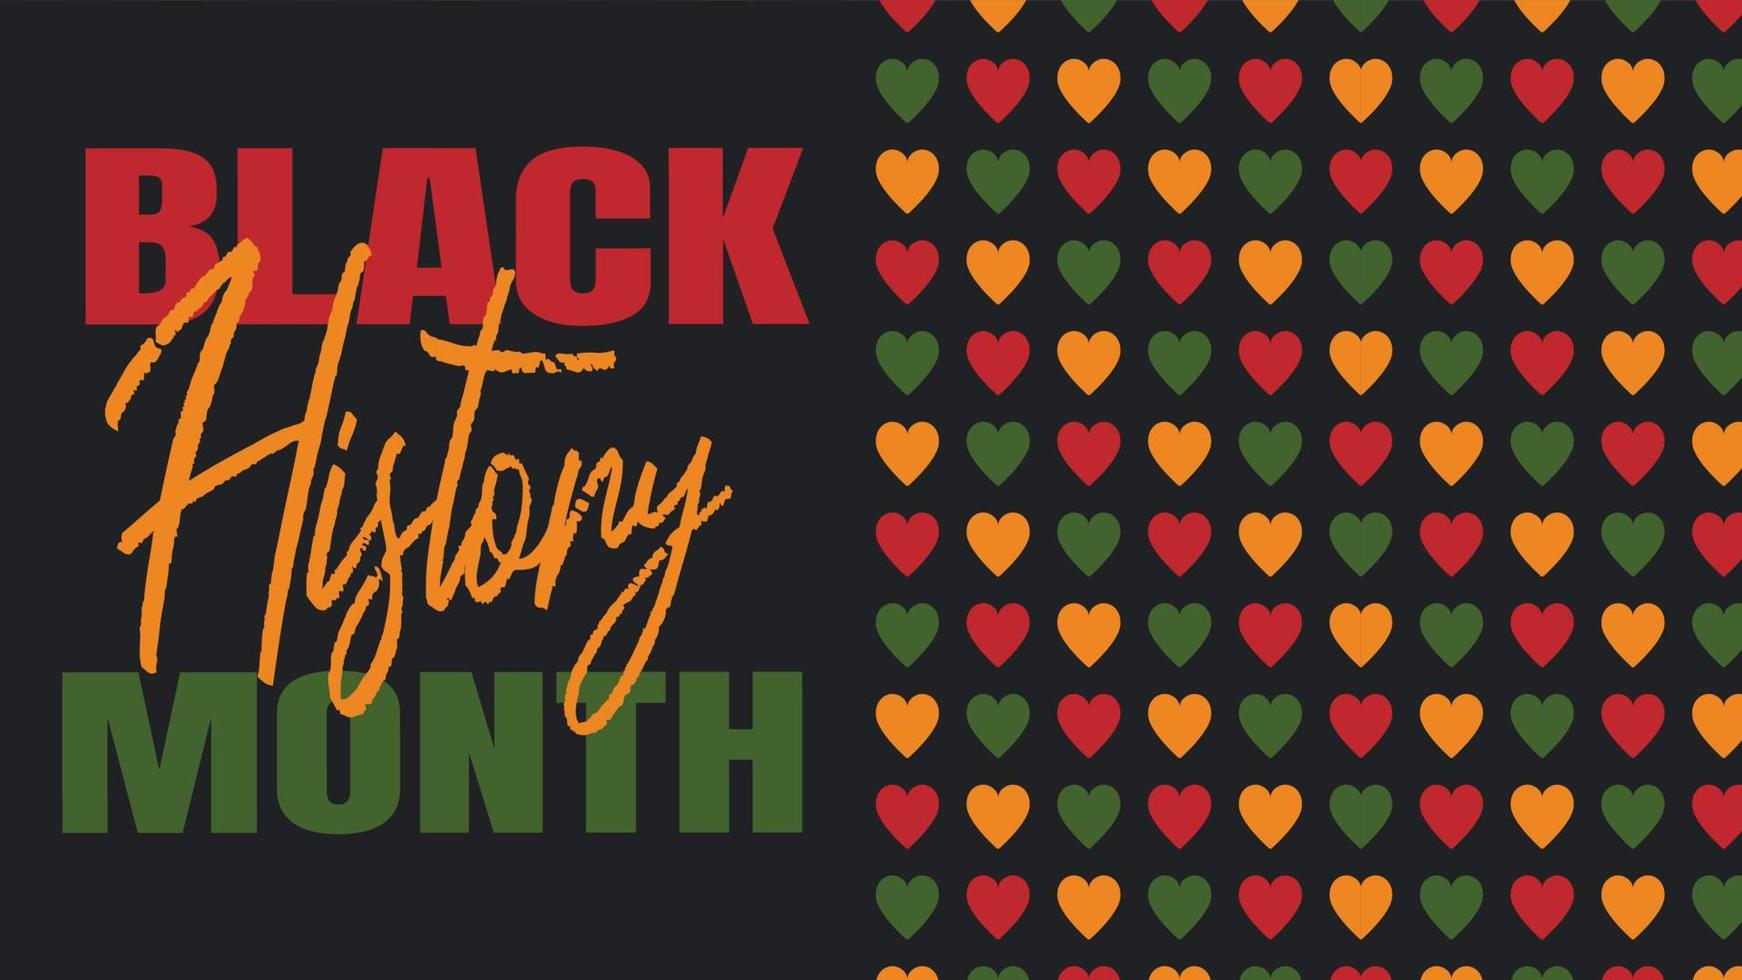 zwarte geschiedenismaand 2022 - Afro-Amerikaanse erfgoedviering in de VS. vectorillustratie met tekst, patroon met hartjes in traditionele Afrikaanse kleuren - groen, rood, geel op zwarte achtergrond. vector